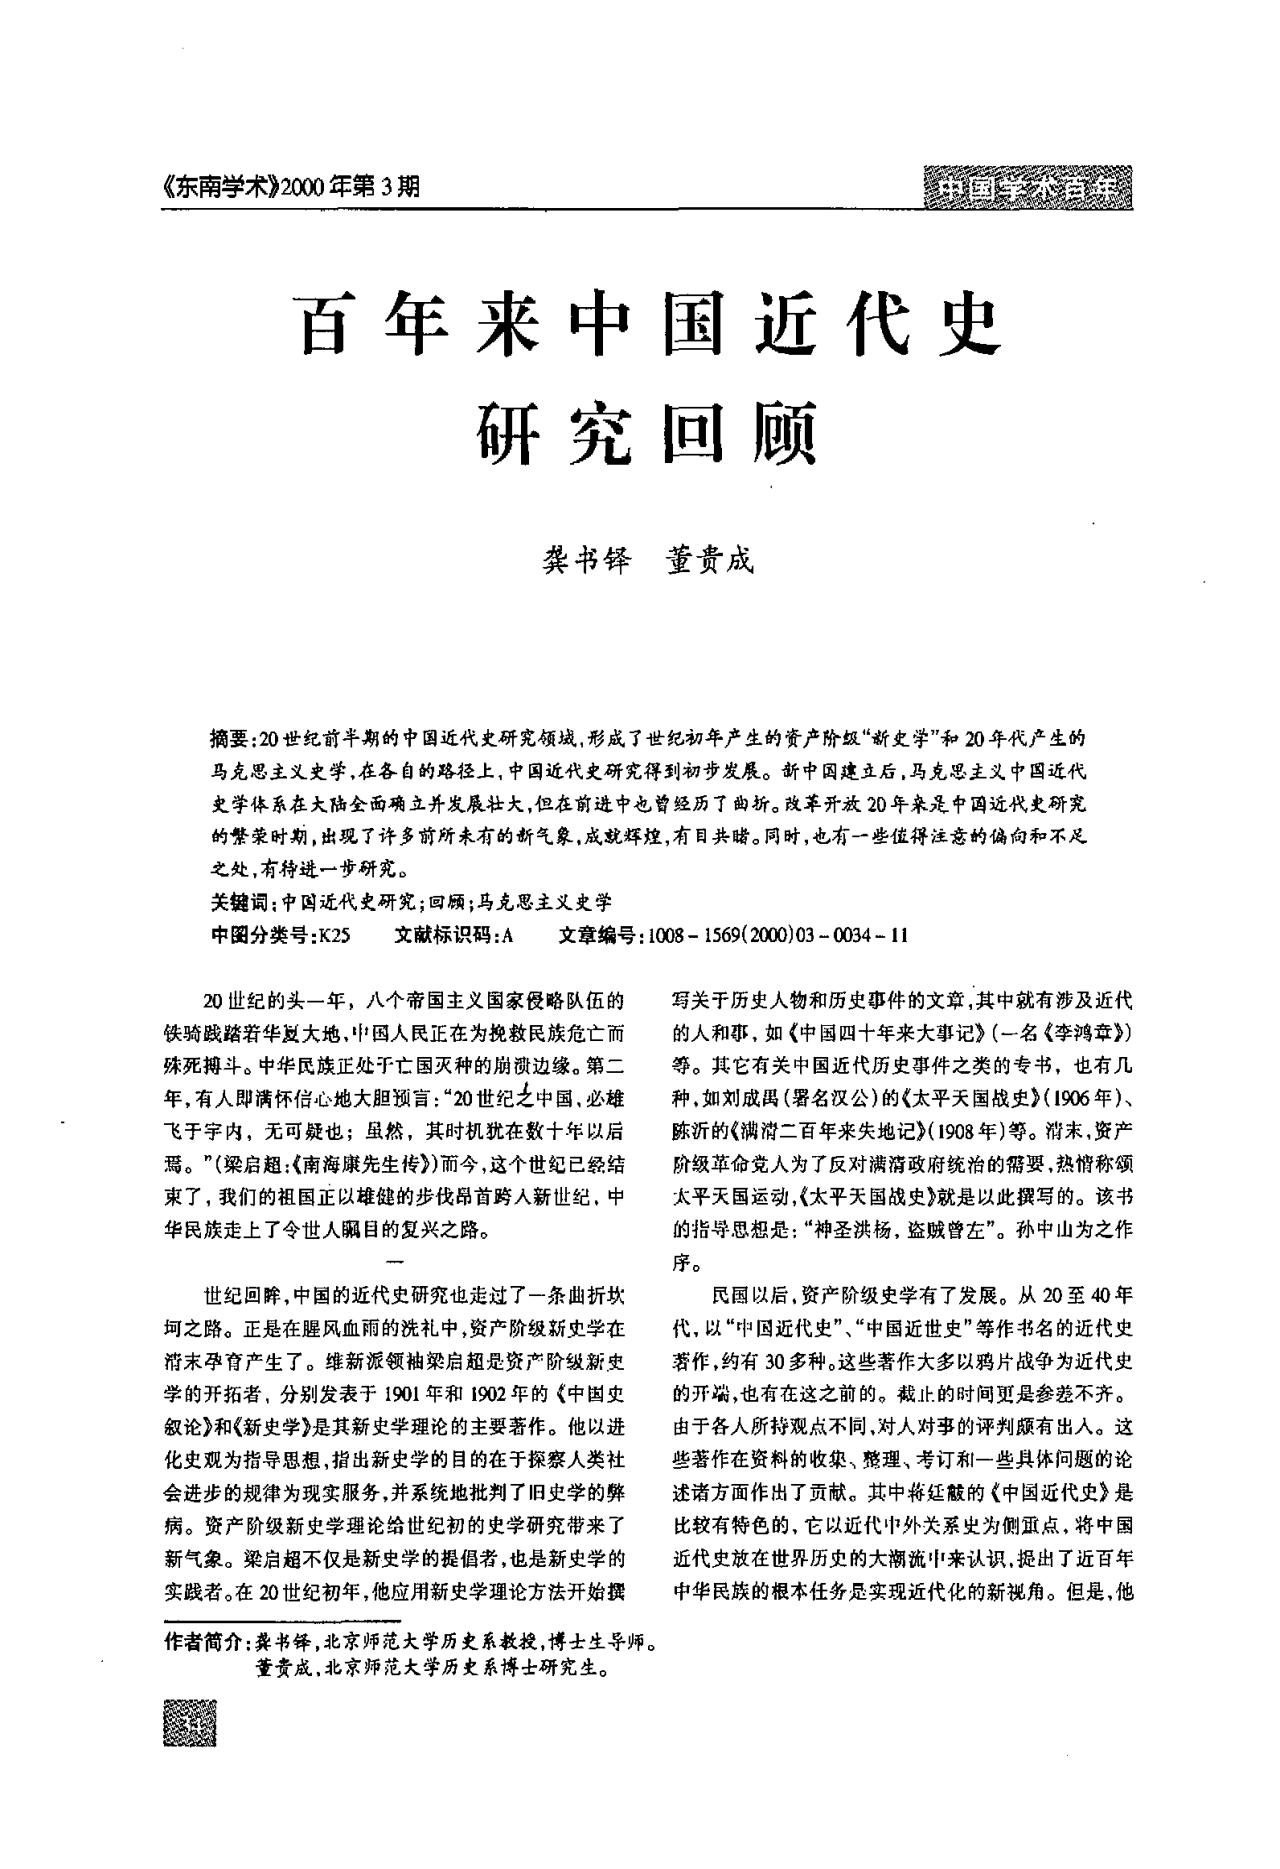 百年来中国近代史研究回顾